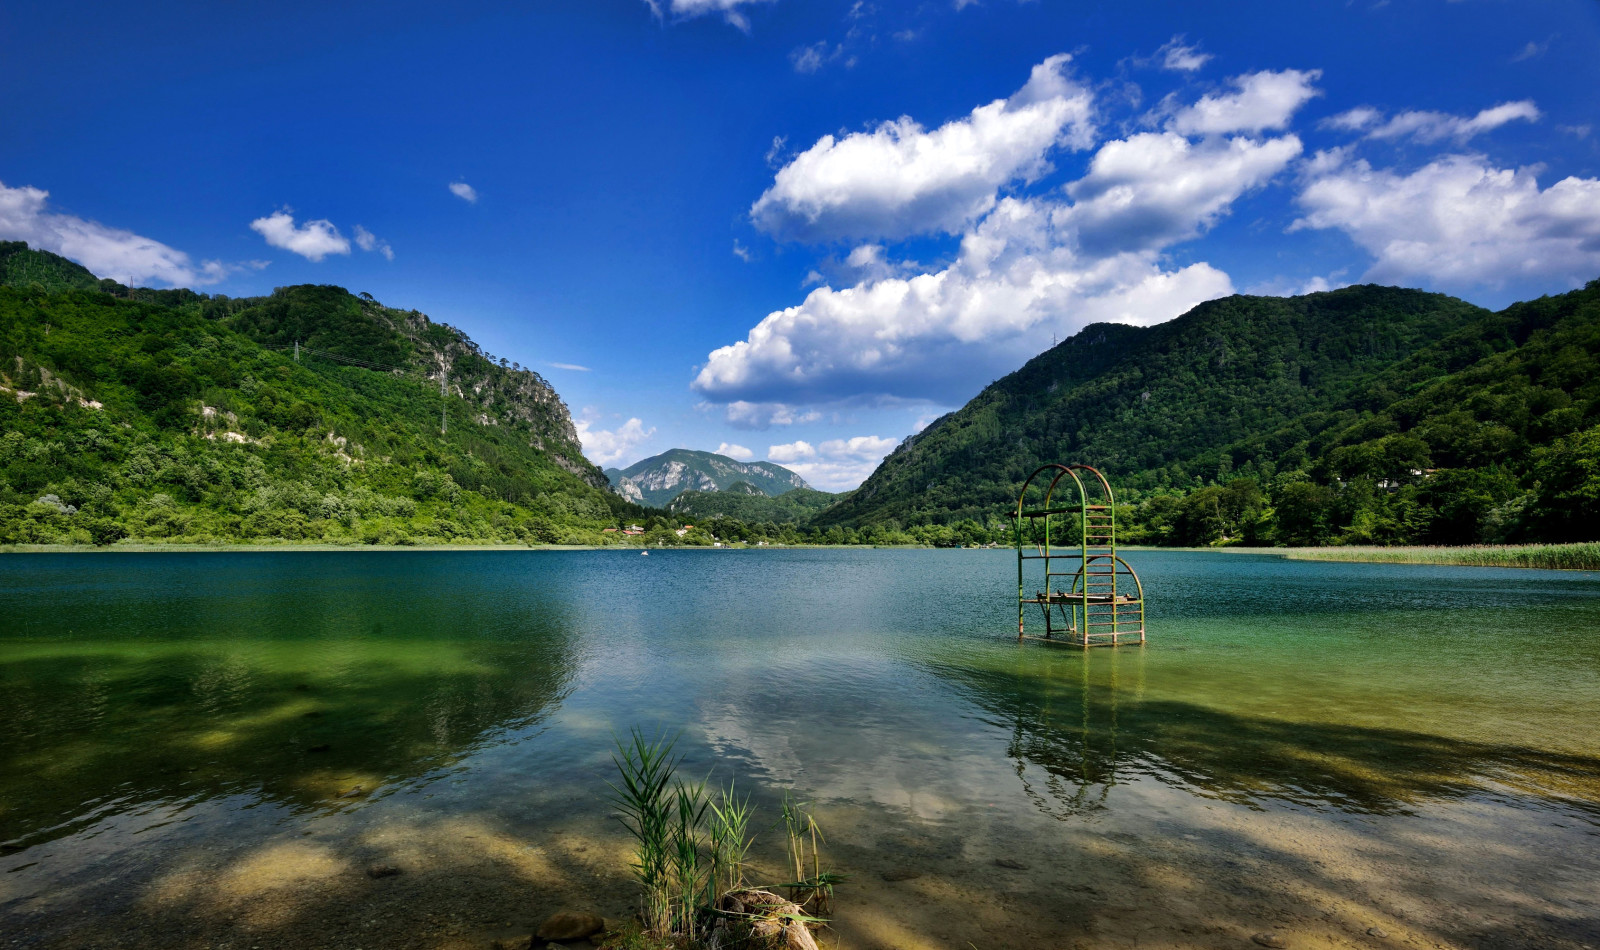 ป่า, ธรรมชาติ, ทะเลสาป, ภูเขา, บ้าน, บอสเนียเฮอร์เซโกวีนา, Barocko